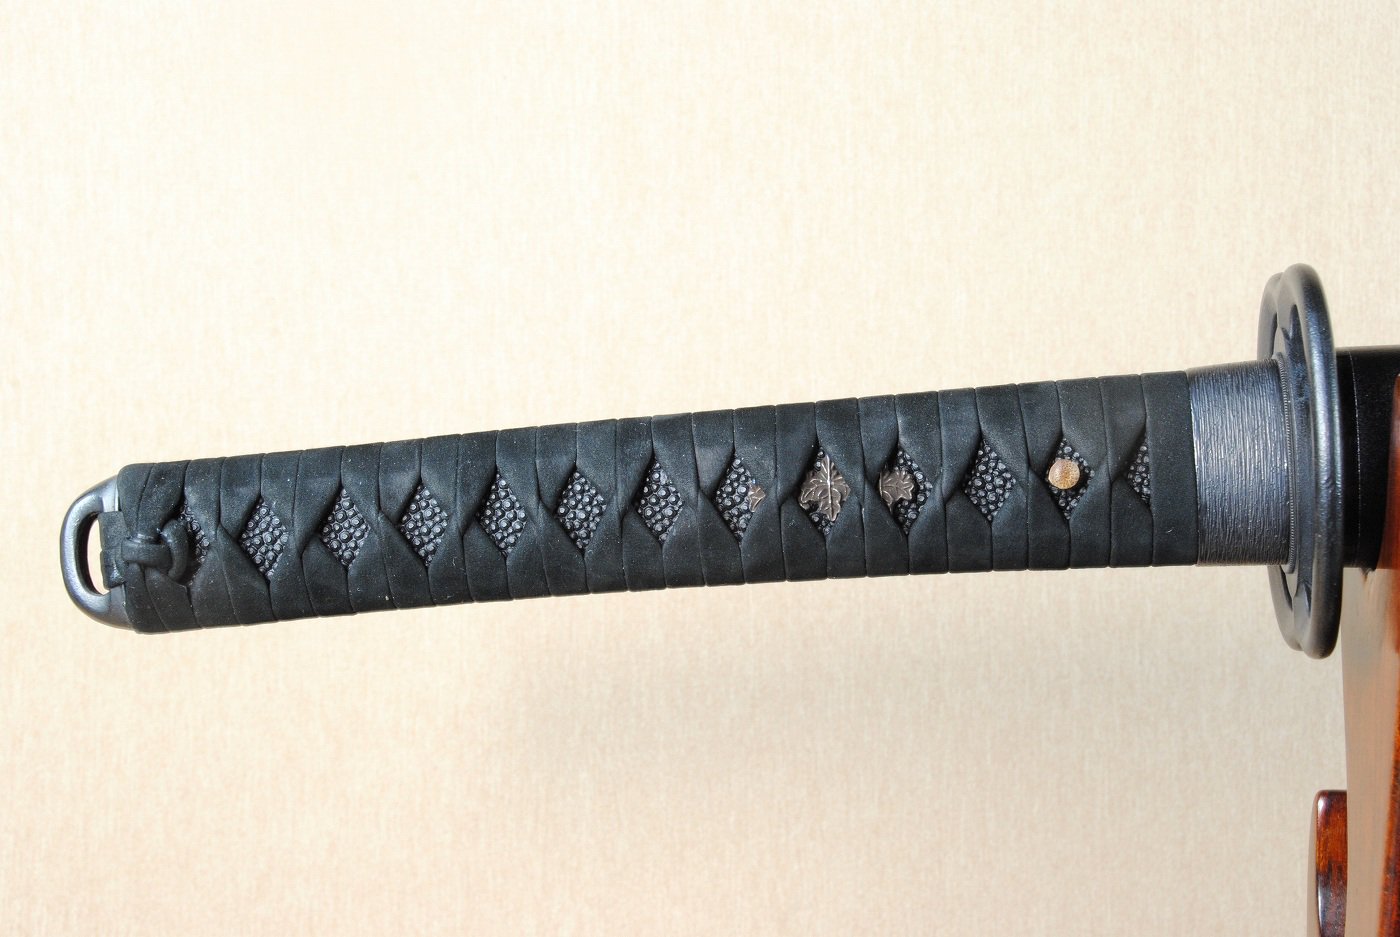 朴木 白鞘 鞘 白鞘材 材料 刀 刀剣 日本刀 質良し 上質 2-35 - 武具